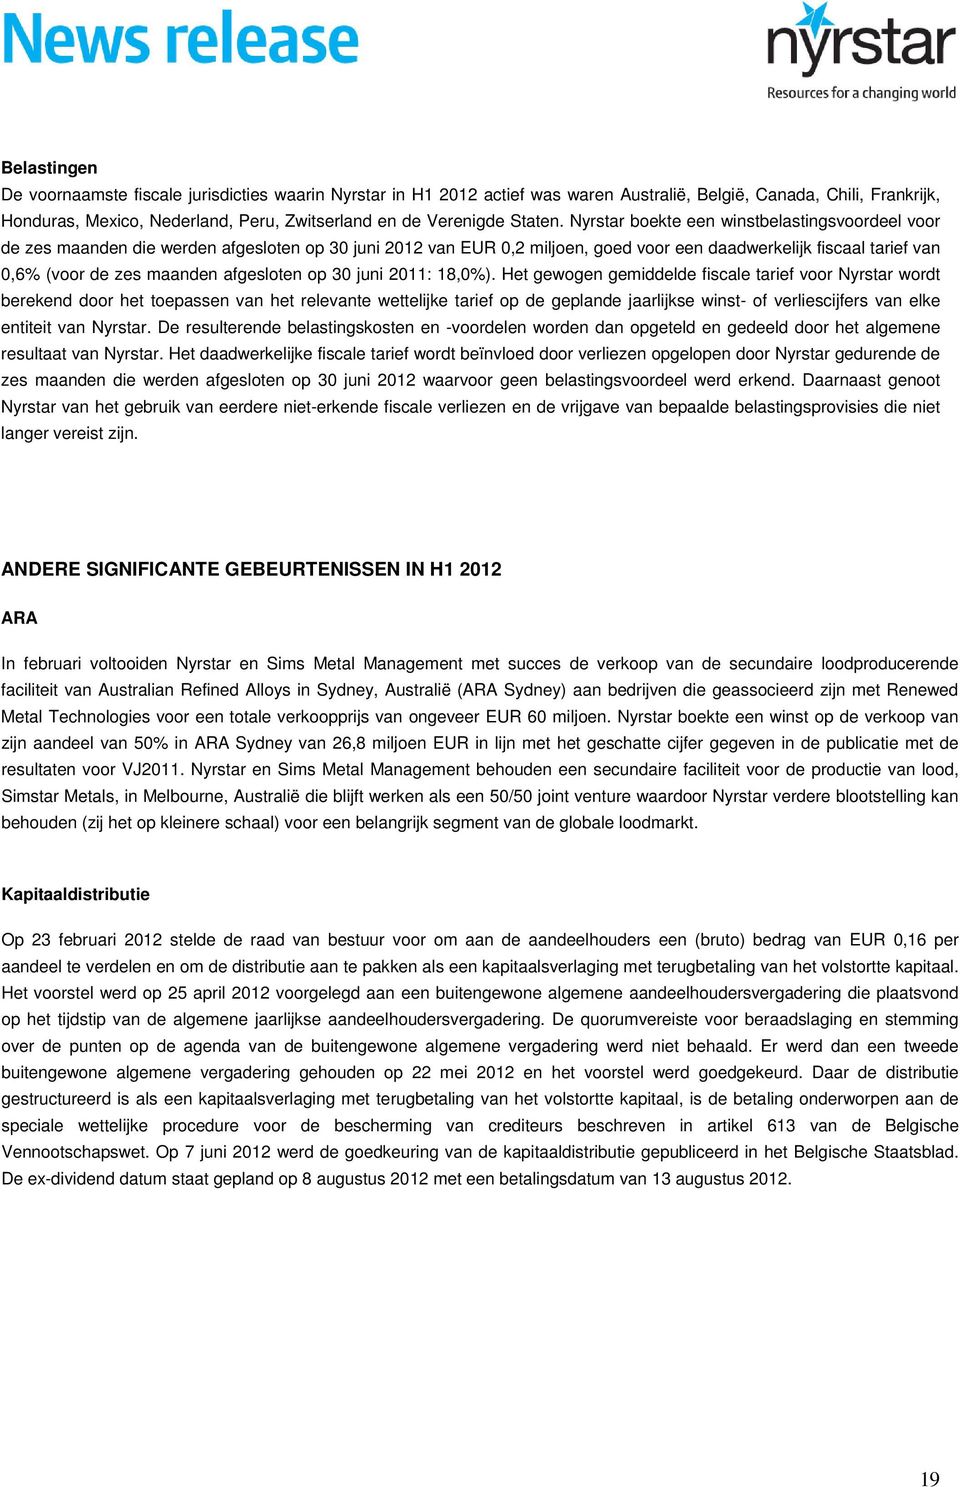 Nyrstar boekte een winstbelastingsvoordeel voor de zes maanden die werden afgesloten op 30 juni 2012 van EUR 0,2 miljoen, goed voor een daadwerkelijk fiscaal tarief van 0,6% (voor de zes maanden